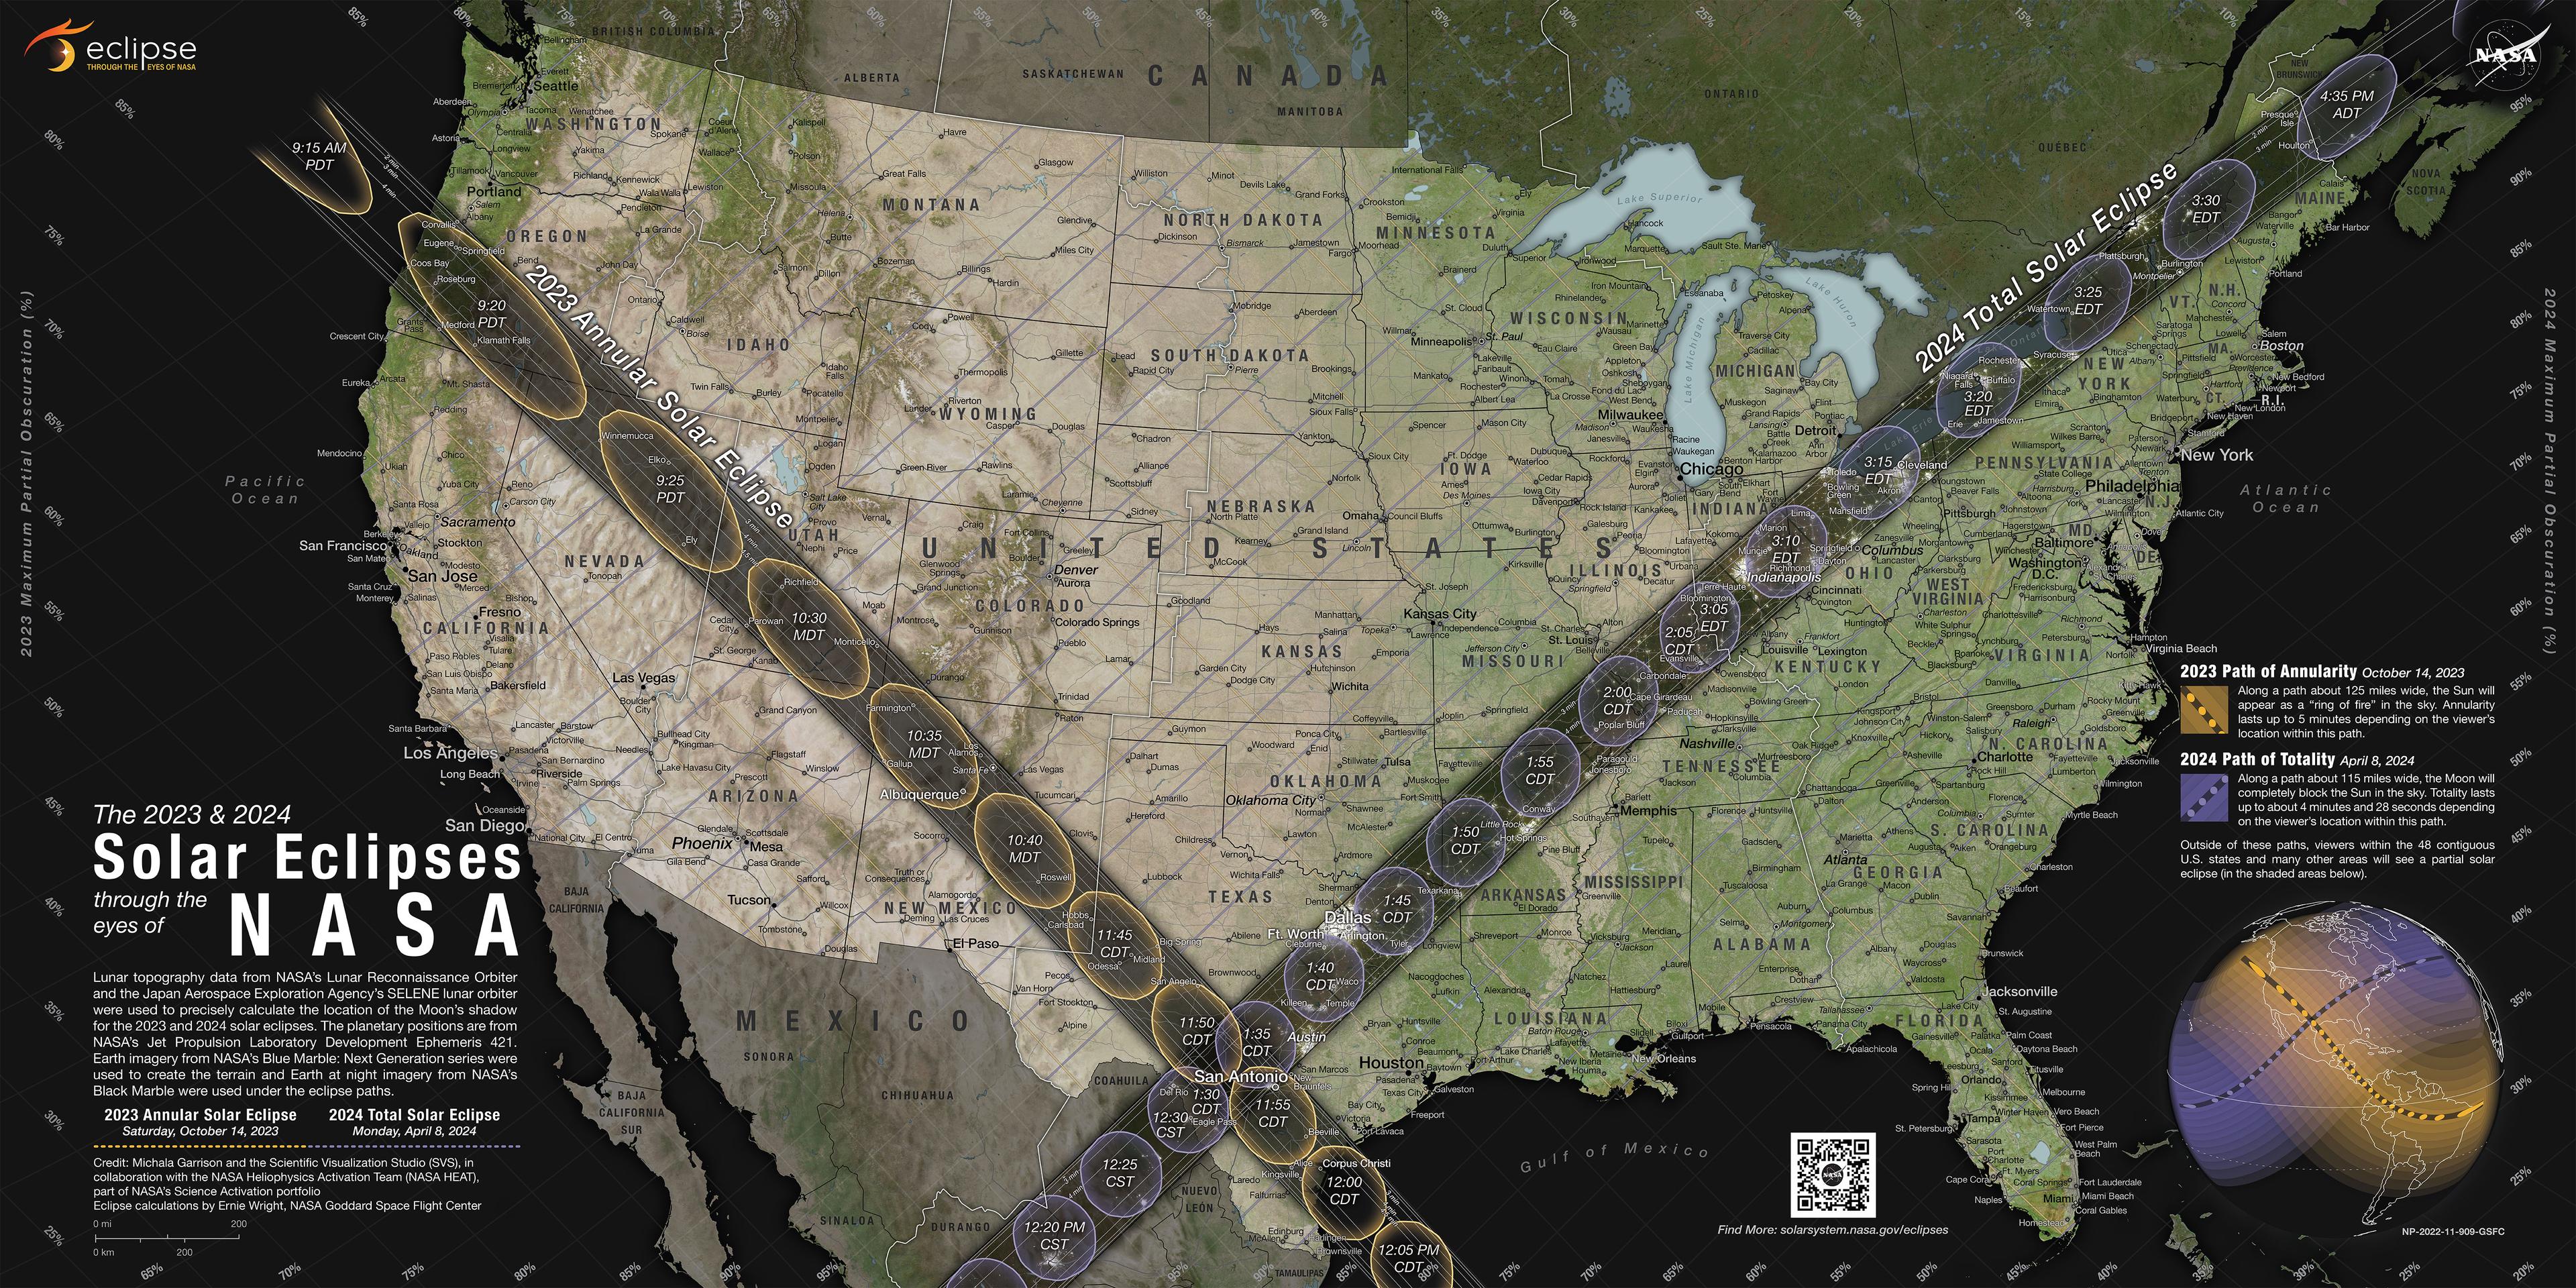 تظهر خريطة للولايات المتحدة مع مسار الظُّلمة الأعظم لكسوفين شمسيين معروضَين بألوان داكنة.